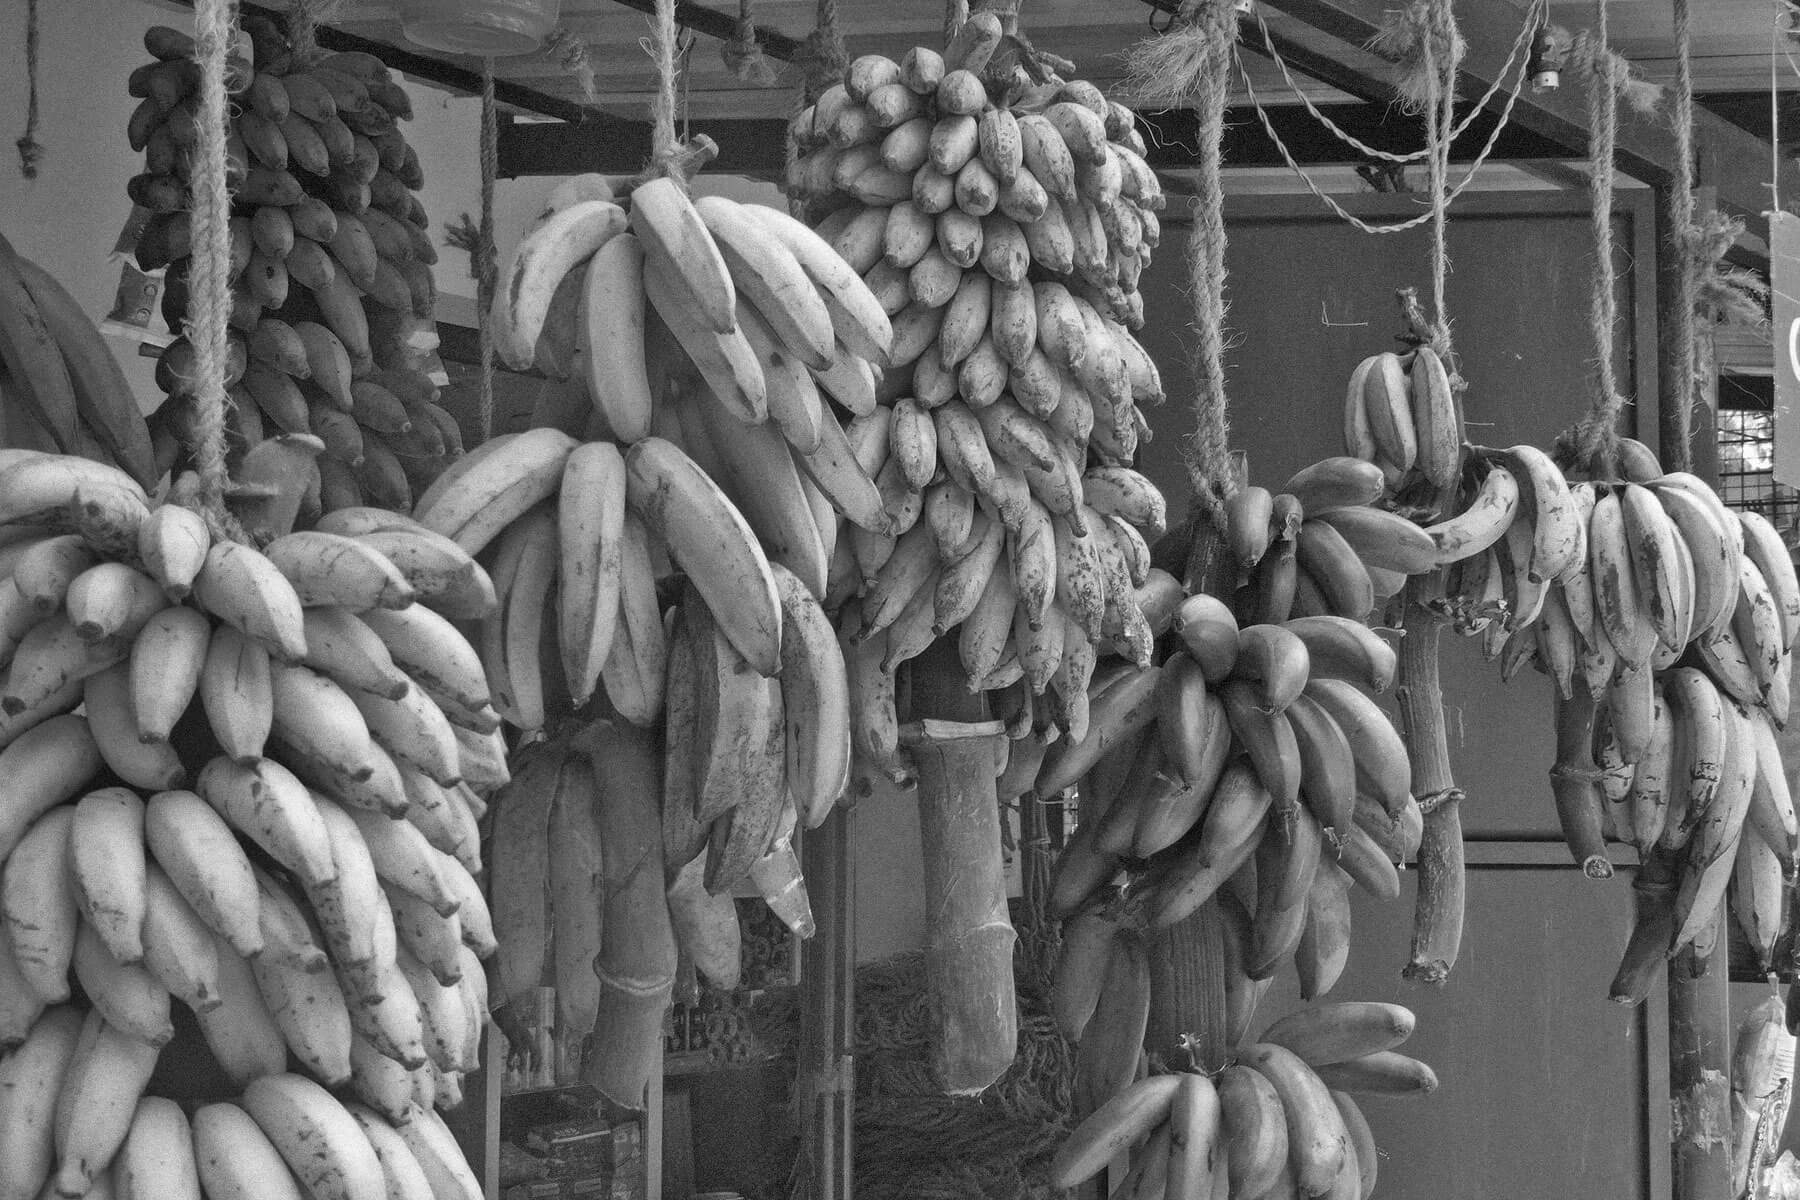 Different banana varieties